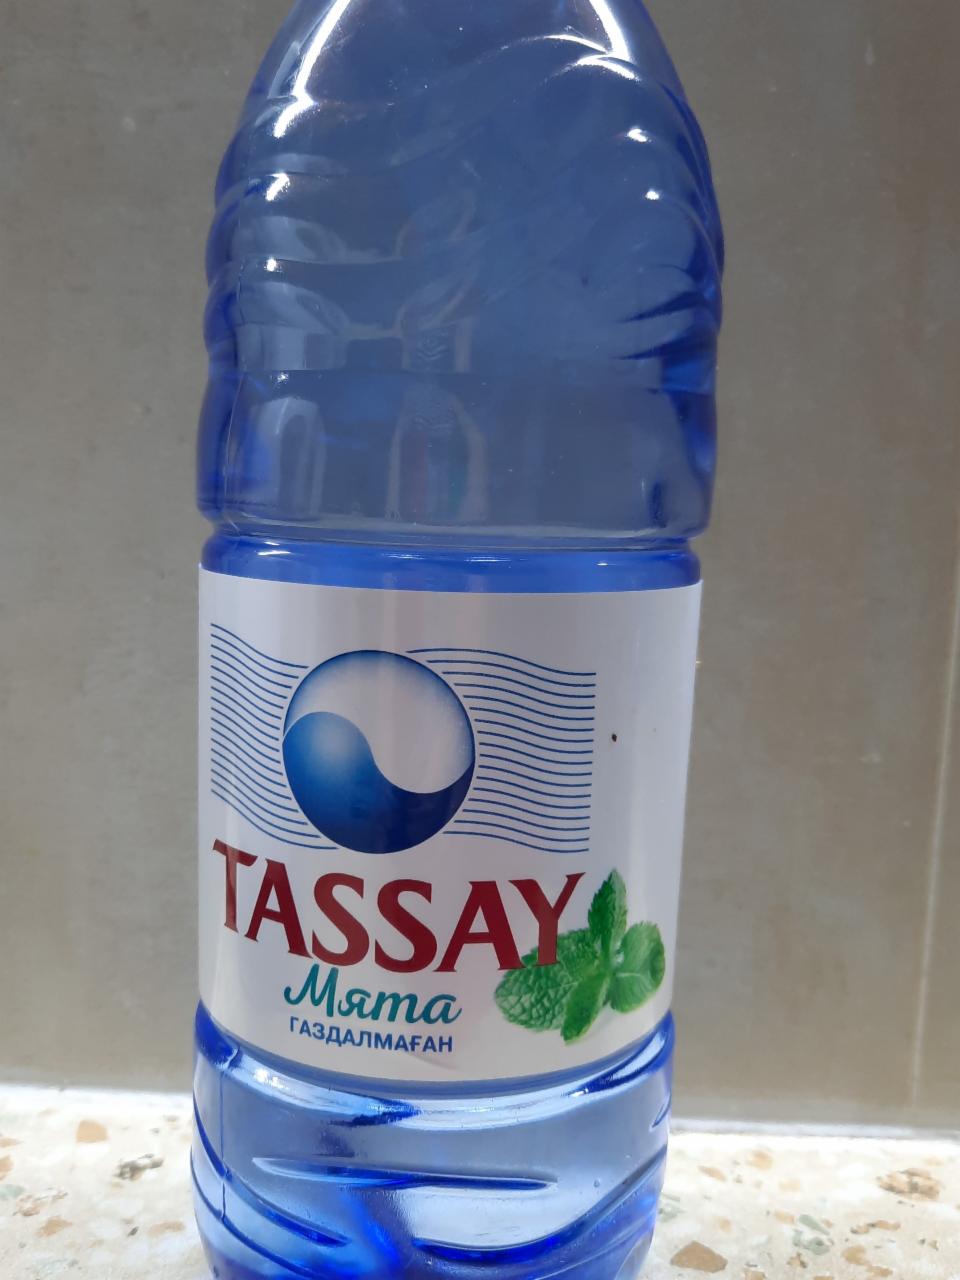 Фото - Вода со вкусом мяты негазированная Tassay